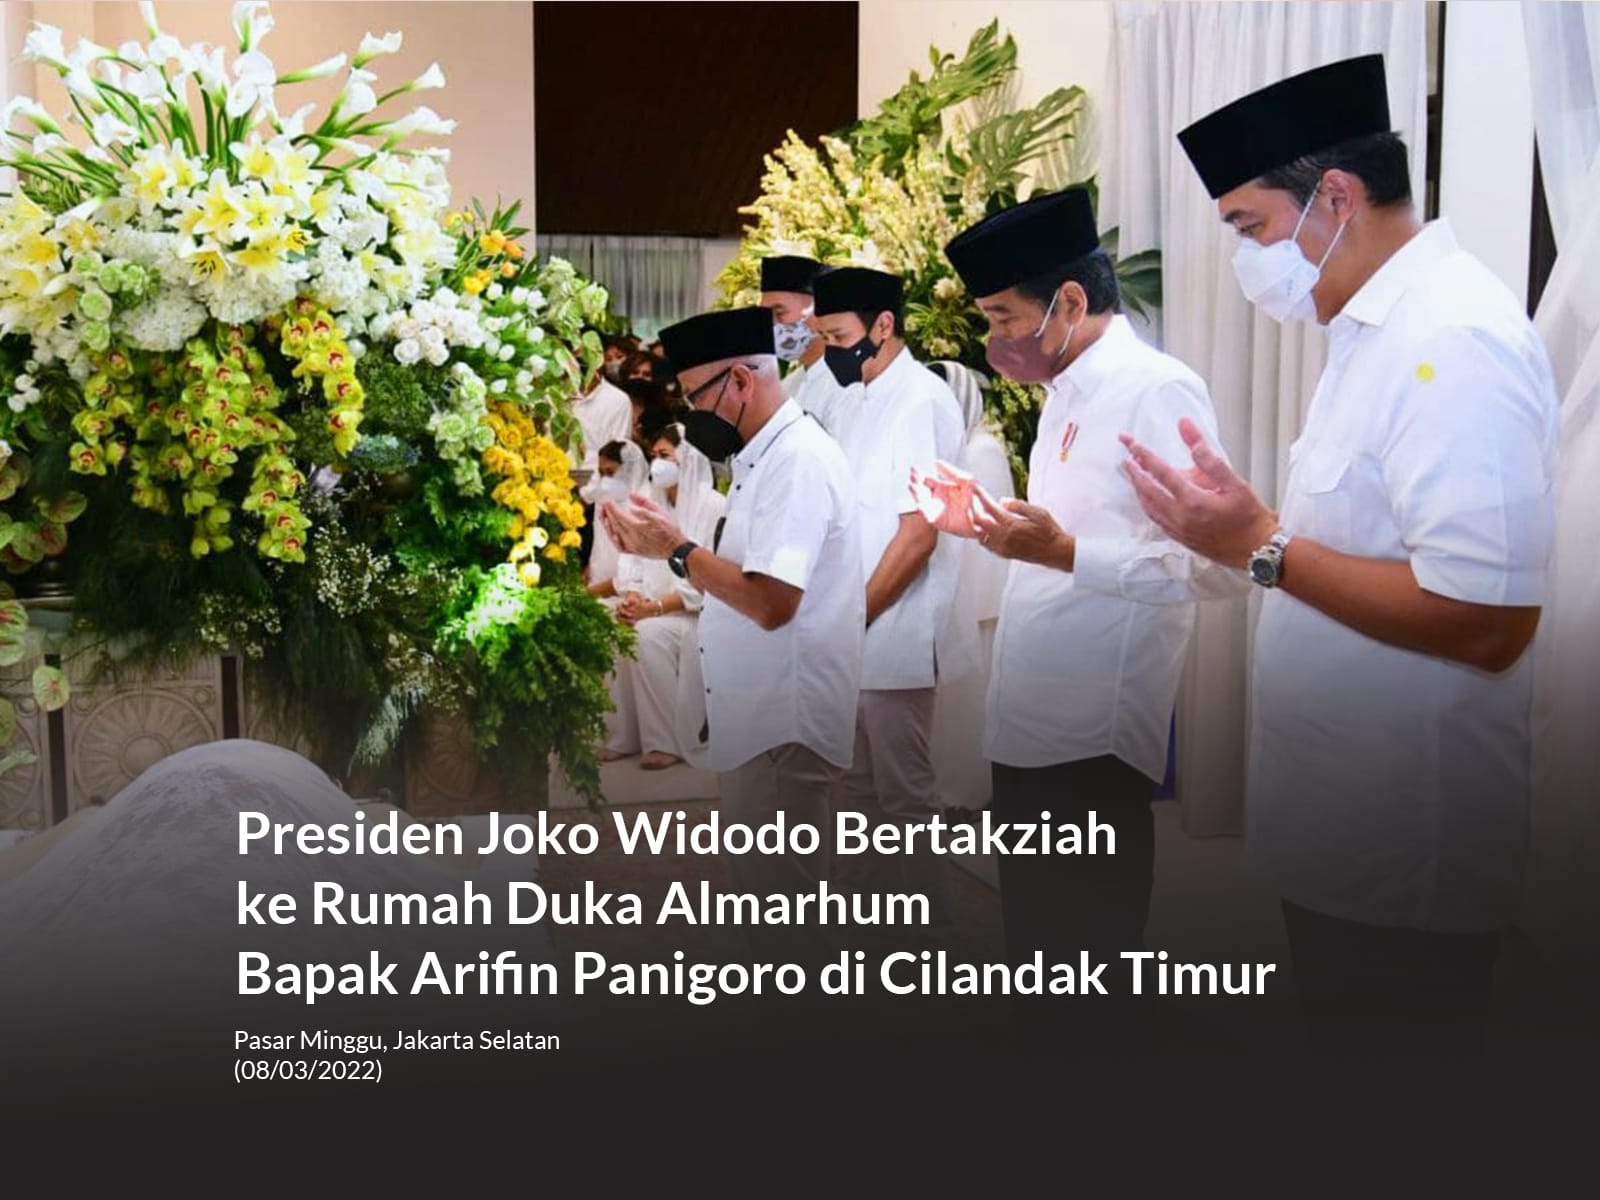 Jokowi takziah ke rumah duka almarhum arifin panigoro